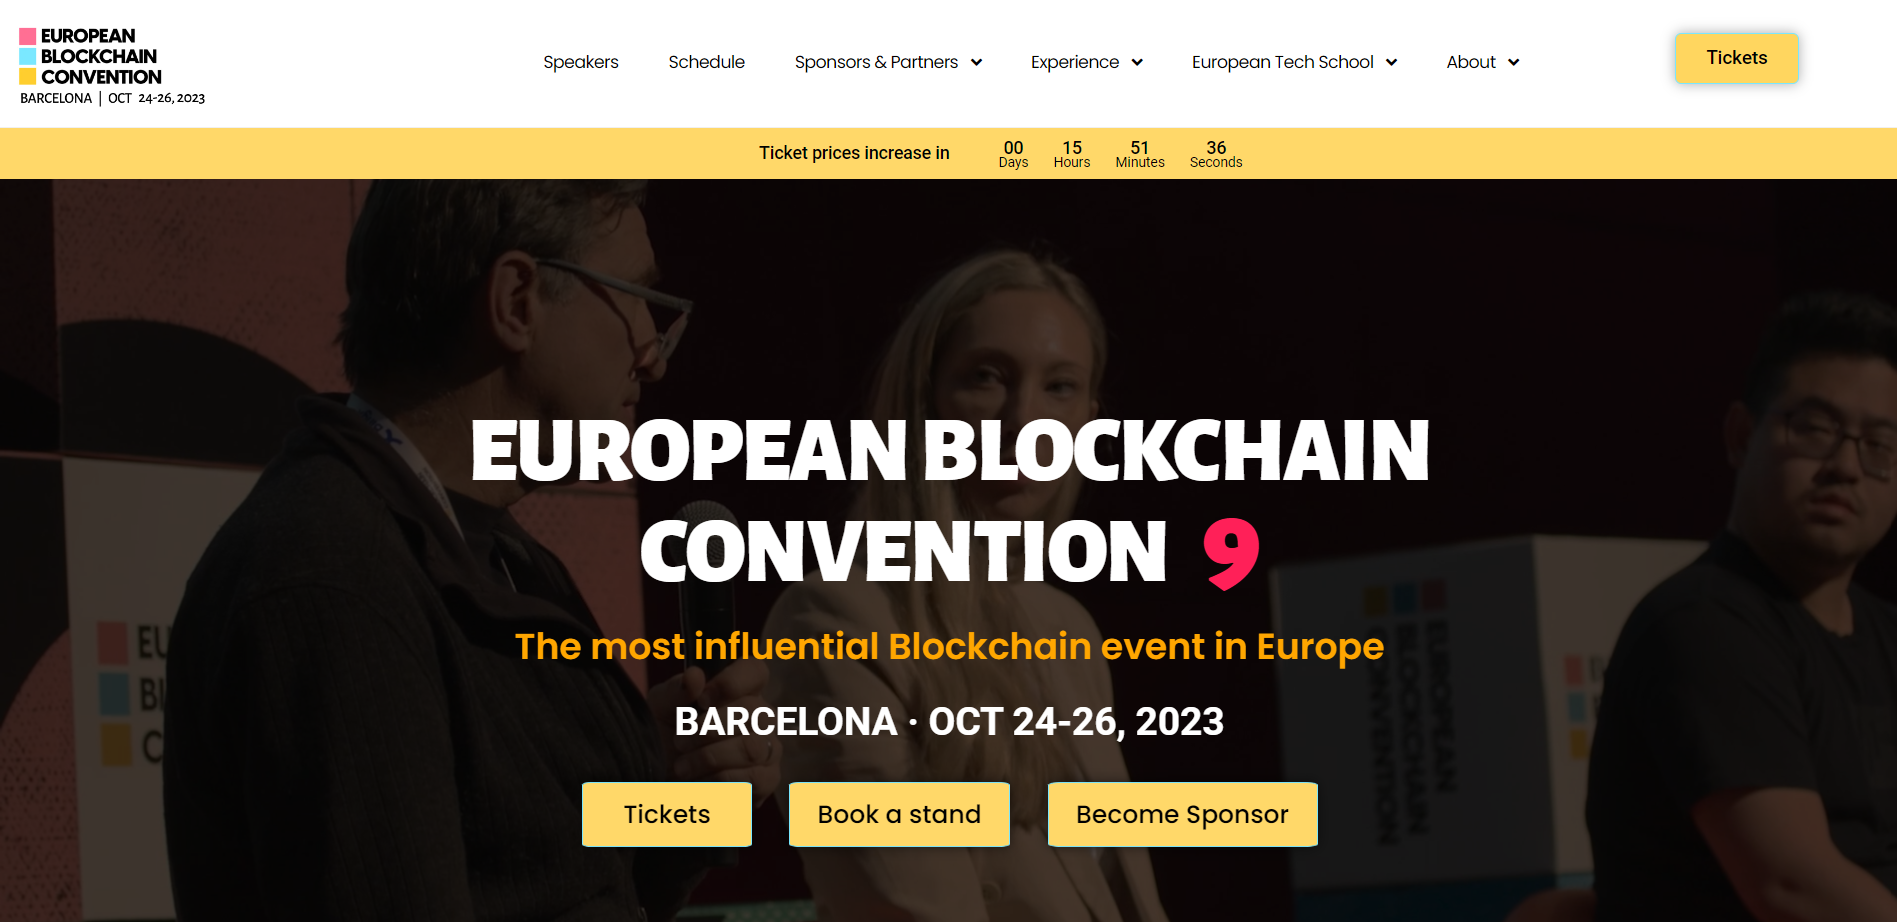 European Blockchain Convention 9